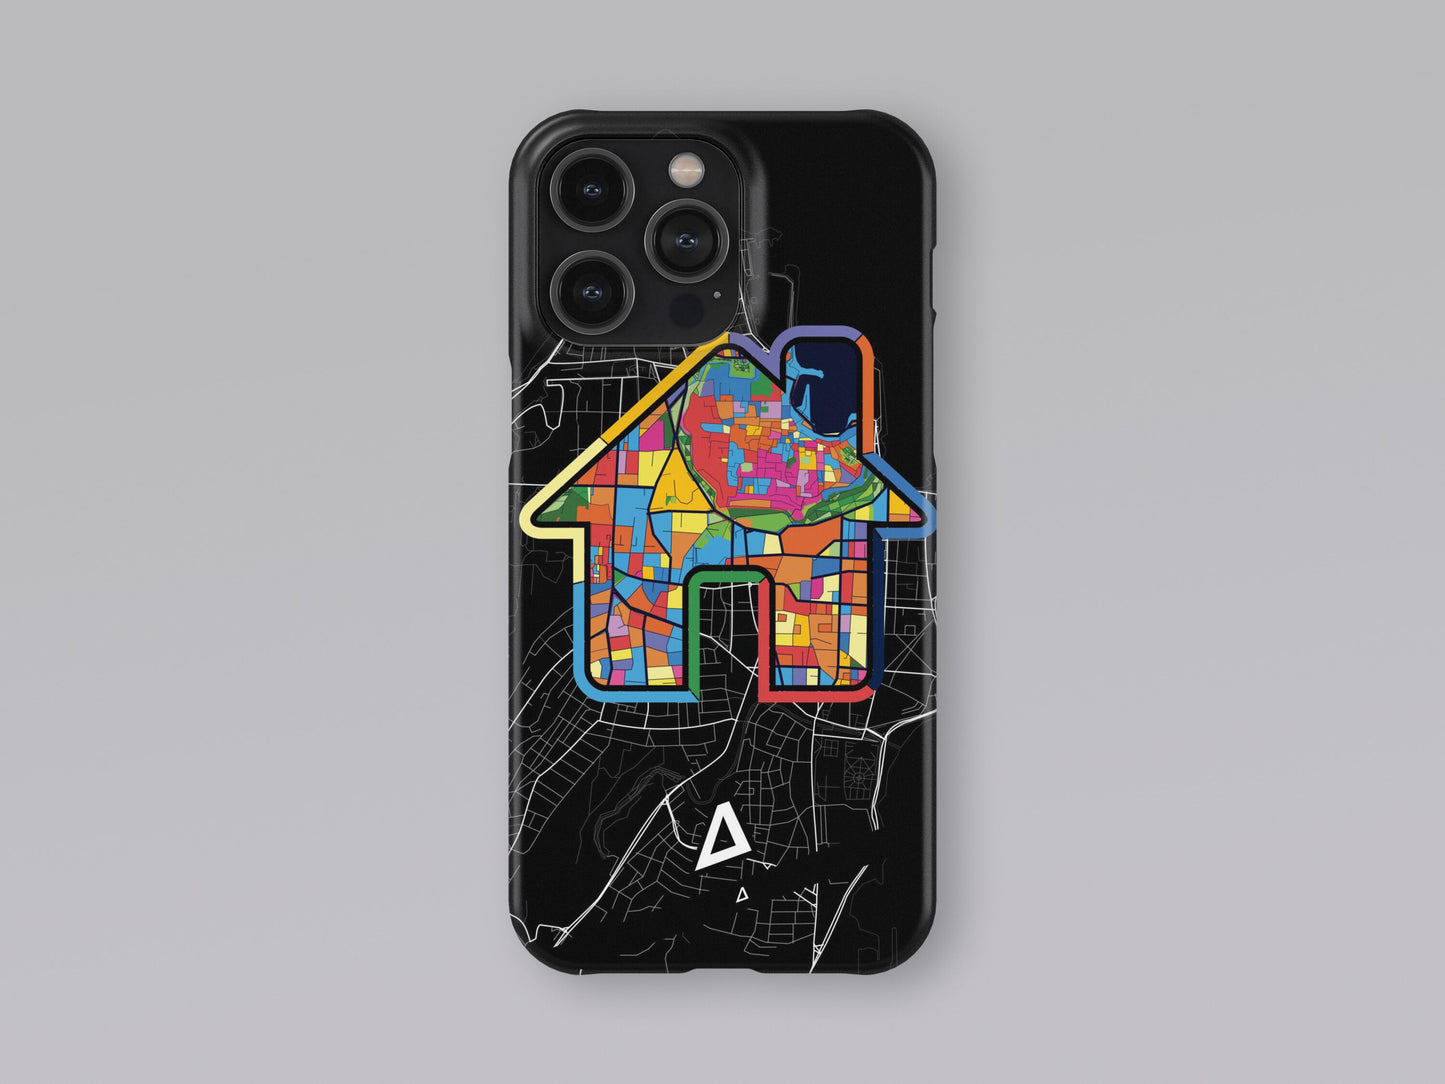 Ροδος Ελλαδα slim phone case with colorful icon 3